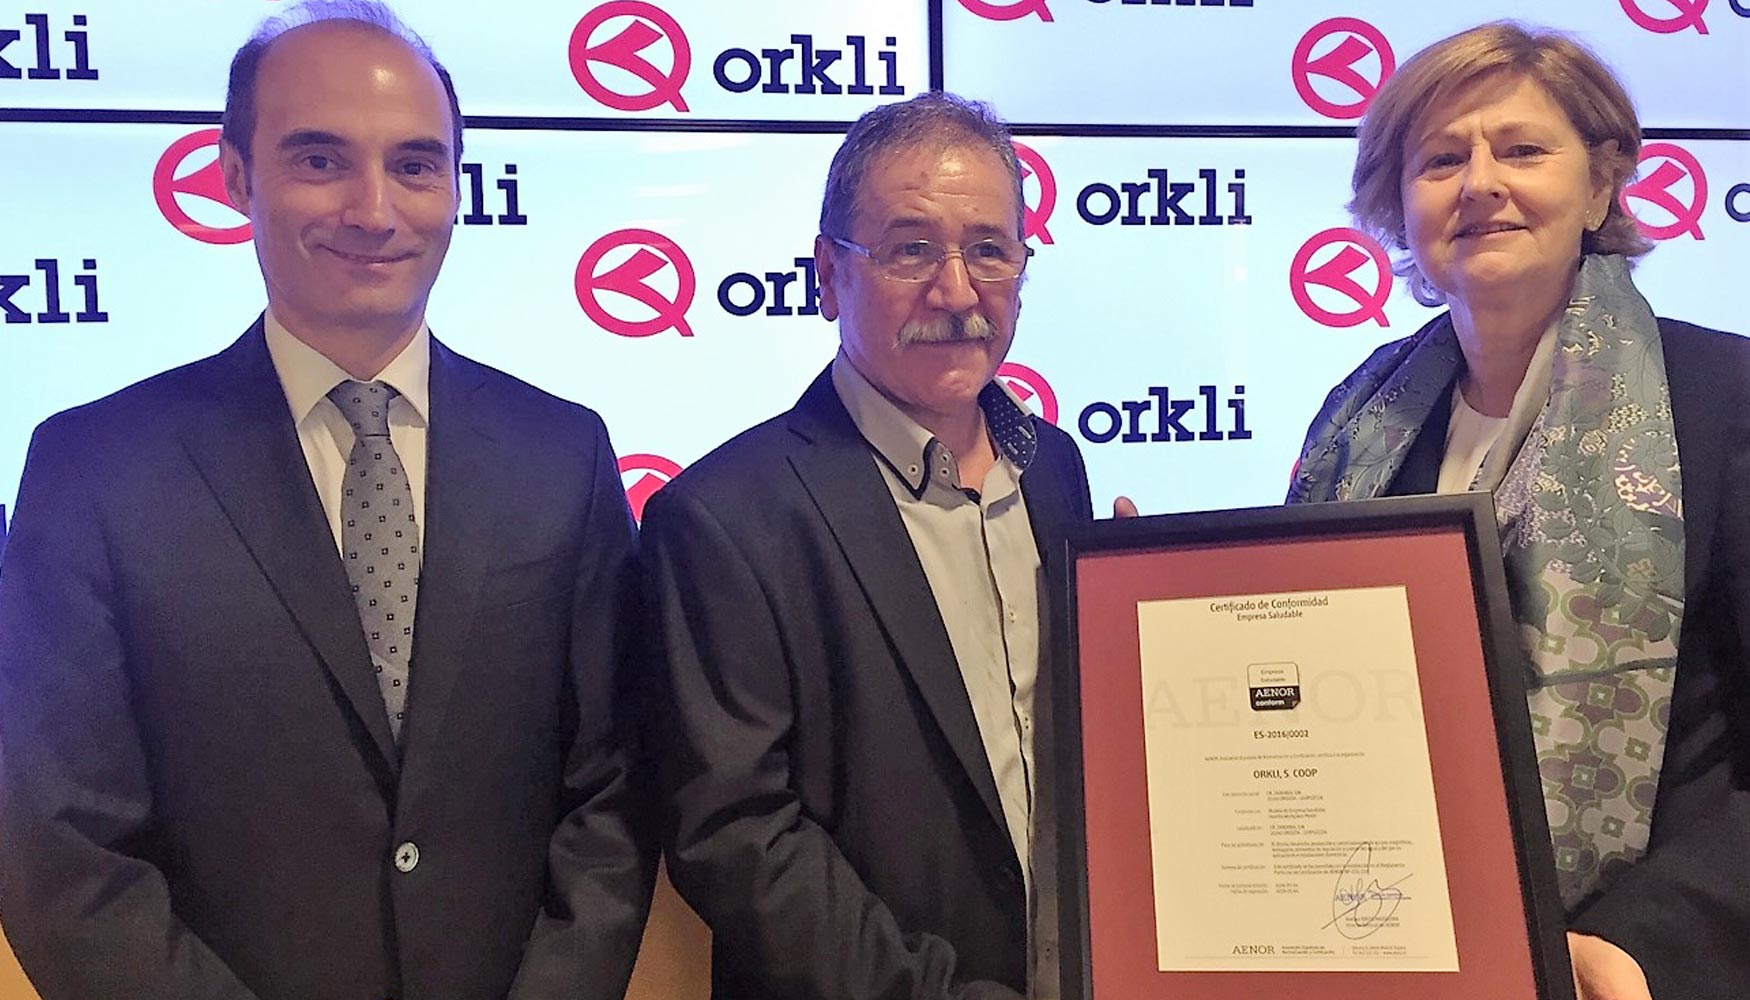 Orkli recibe el certificado Aenor de empresa saludable